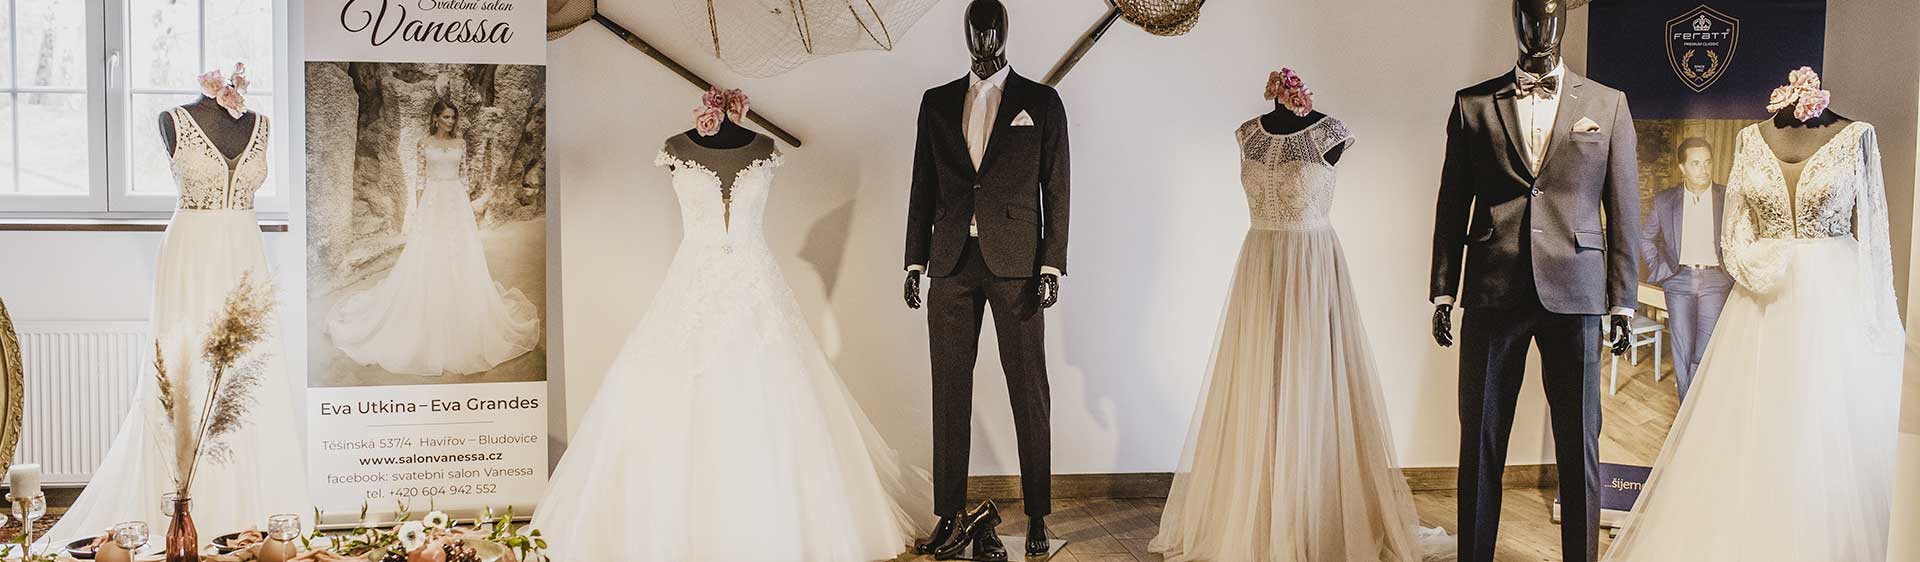 Prodej a půjčovna svatebních šatů